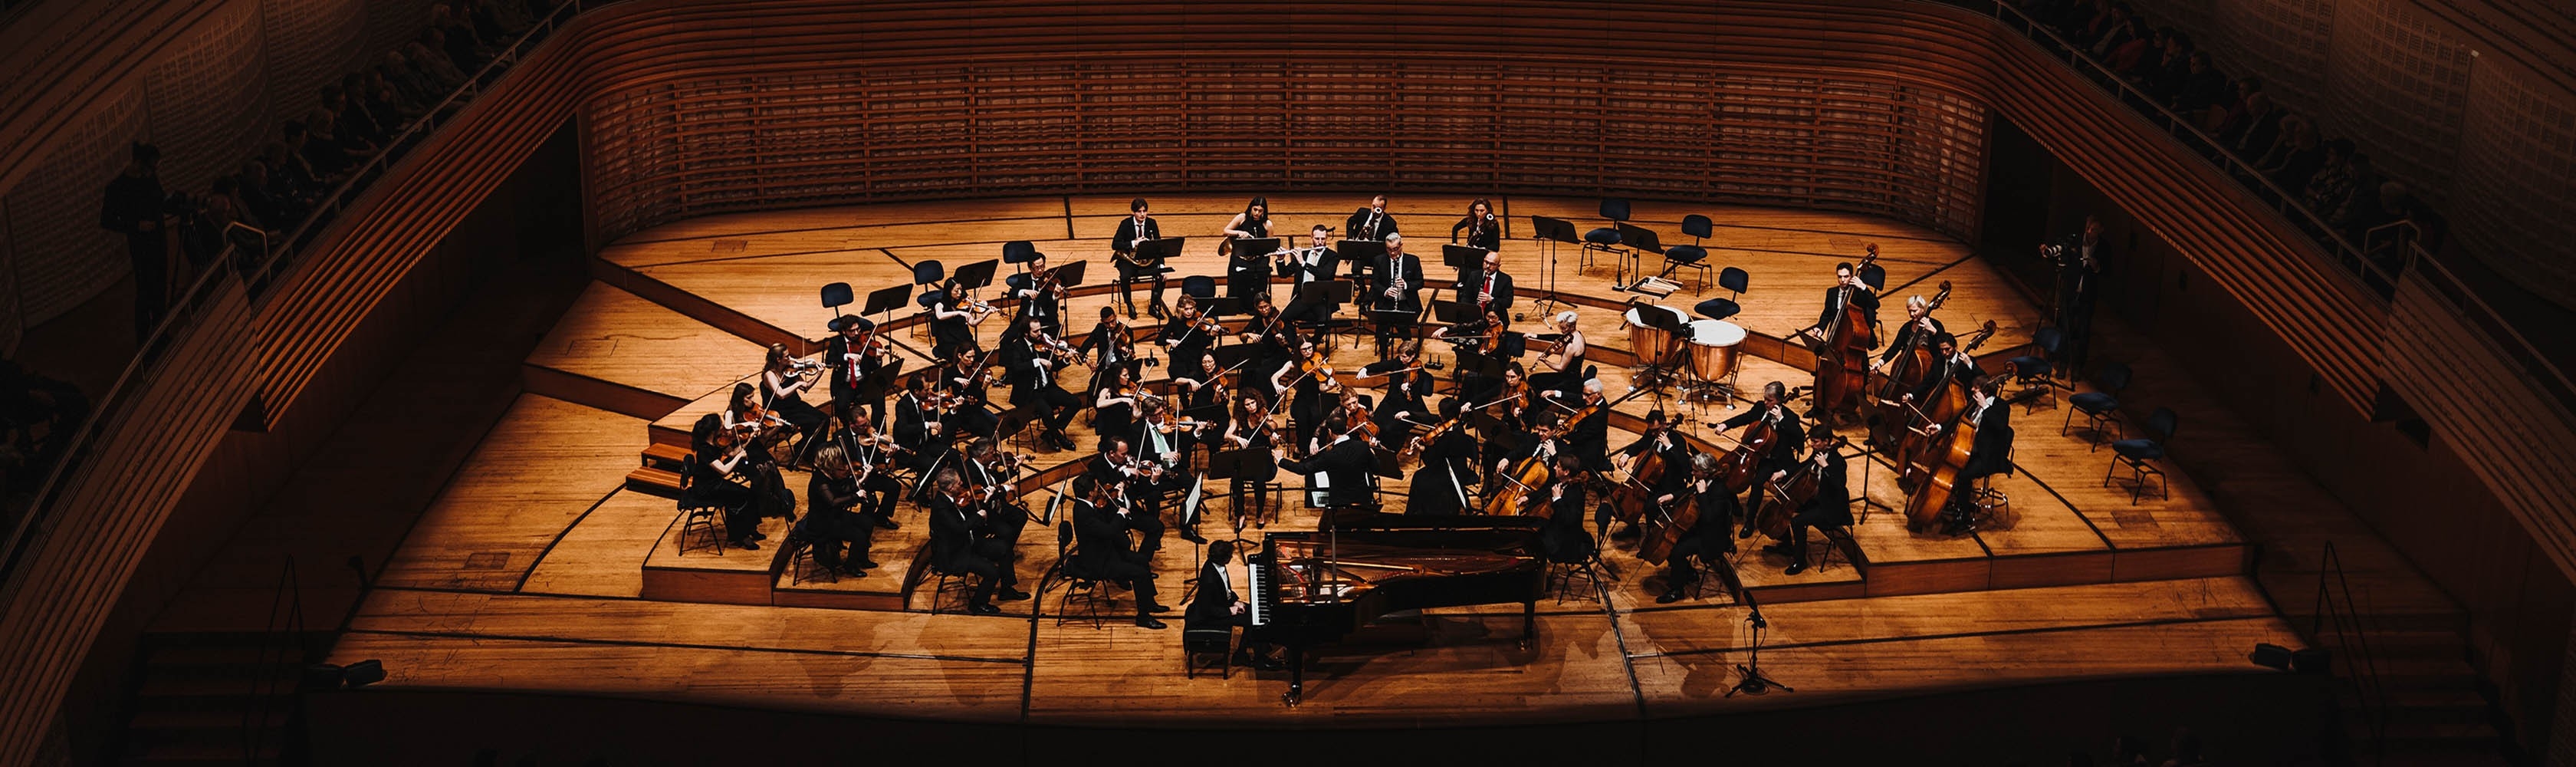 La musique au service des droits humains – Symphonie n˚ 9 de Beethoven